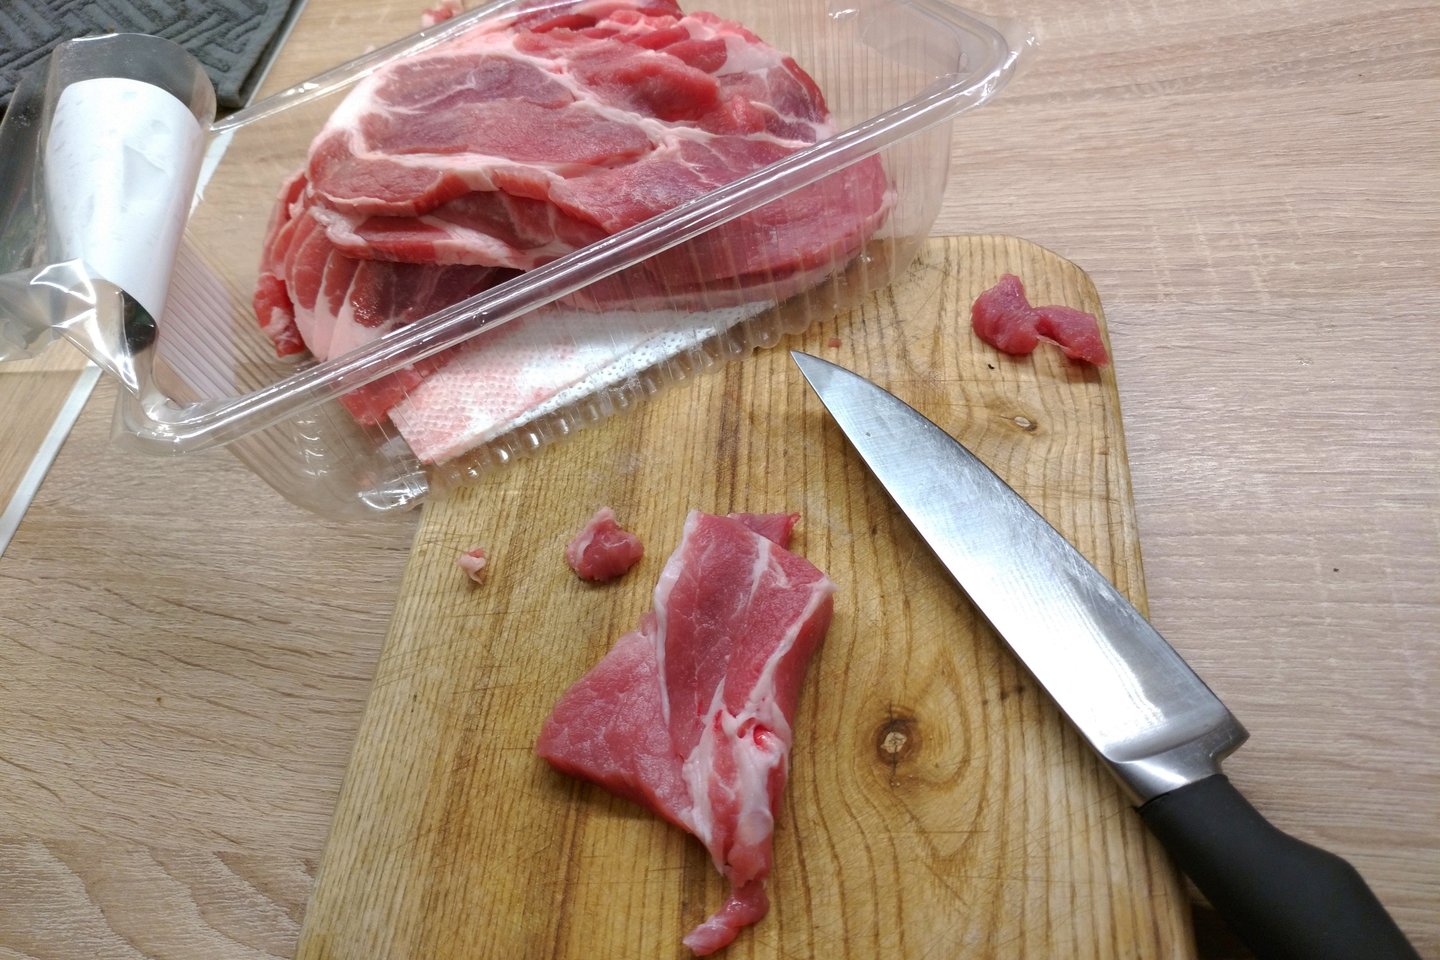  Į dujines mėsos pakuotes klojamos servetėlės skysčiams sugerti. <br> A.Srėbalienės nuotr.